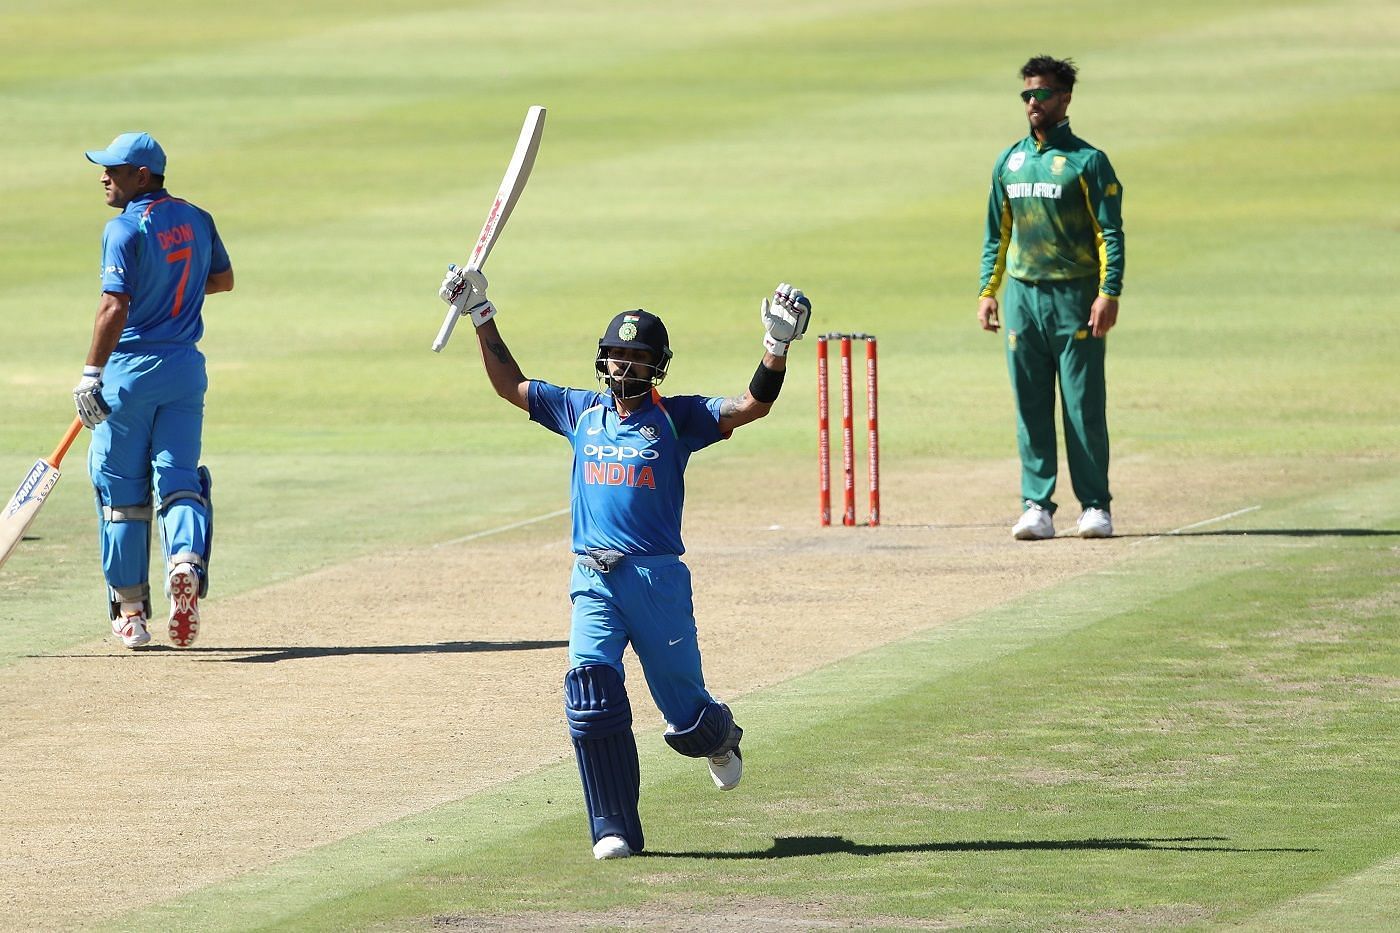 विराट कोहली ने दक्षिण अफ्रीका के खिलाफ जबरदस्त बल्लेबाजी की थी